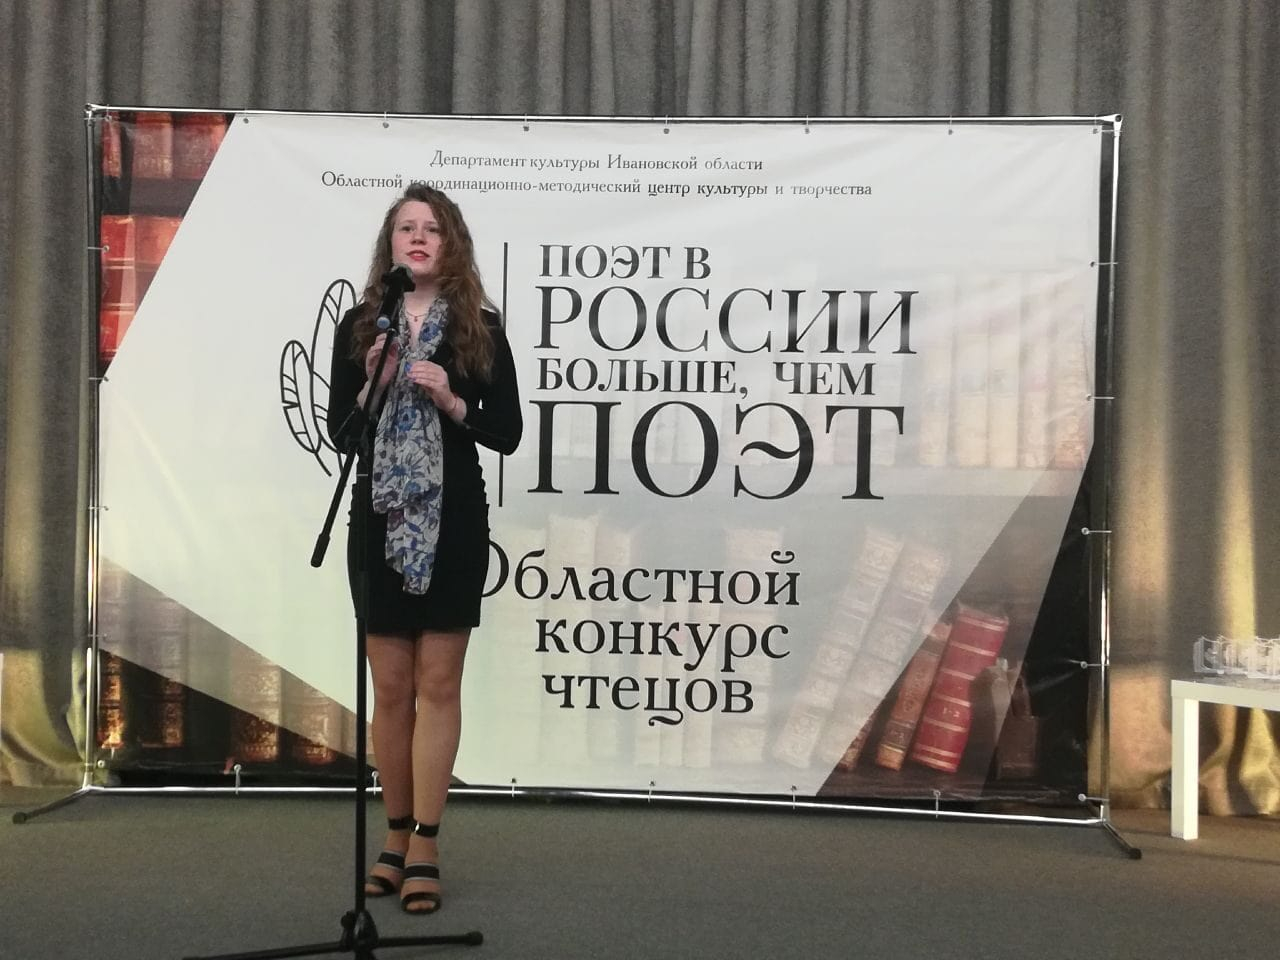 Областной конкурс чтецов «Поэт в России больше, чем поэт»